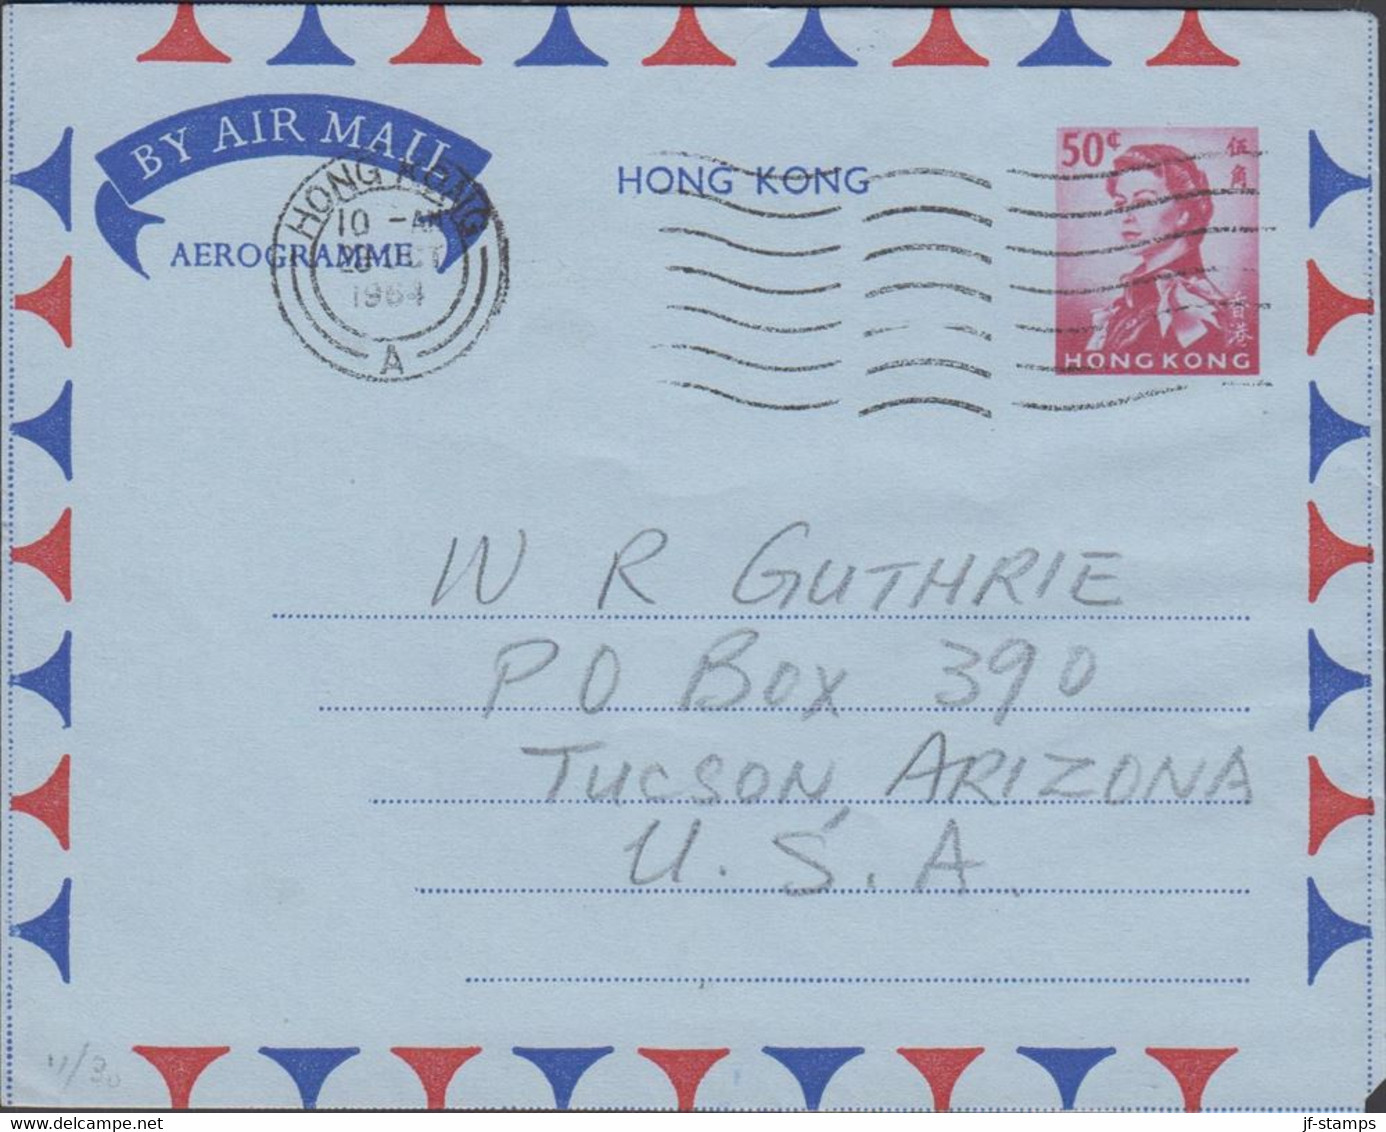 1964. HONG KONG. AEROGRAMME Elizabeth 50 C To USA From HONG KONG 26 DEC 64. - JF427149 - Postal Stationery